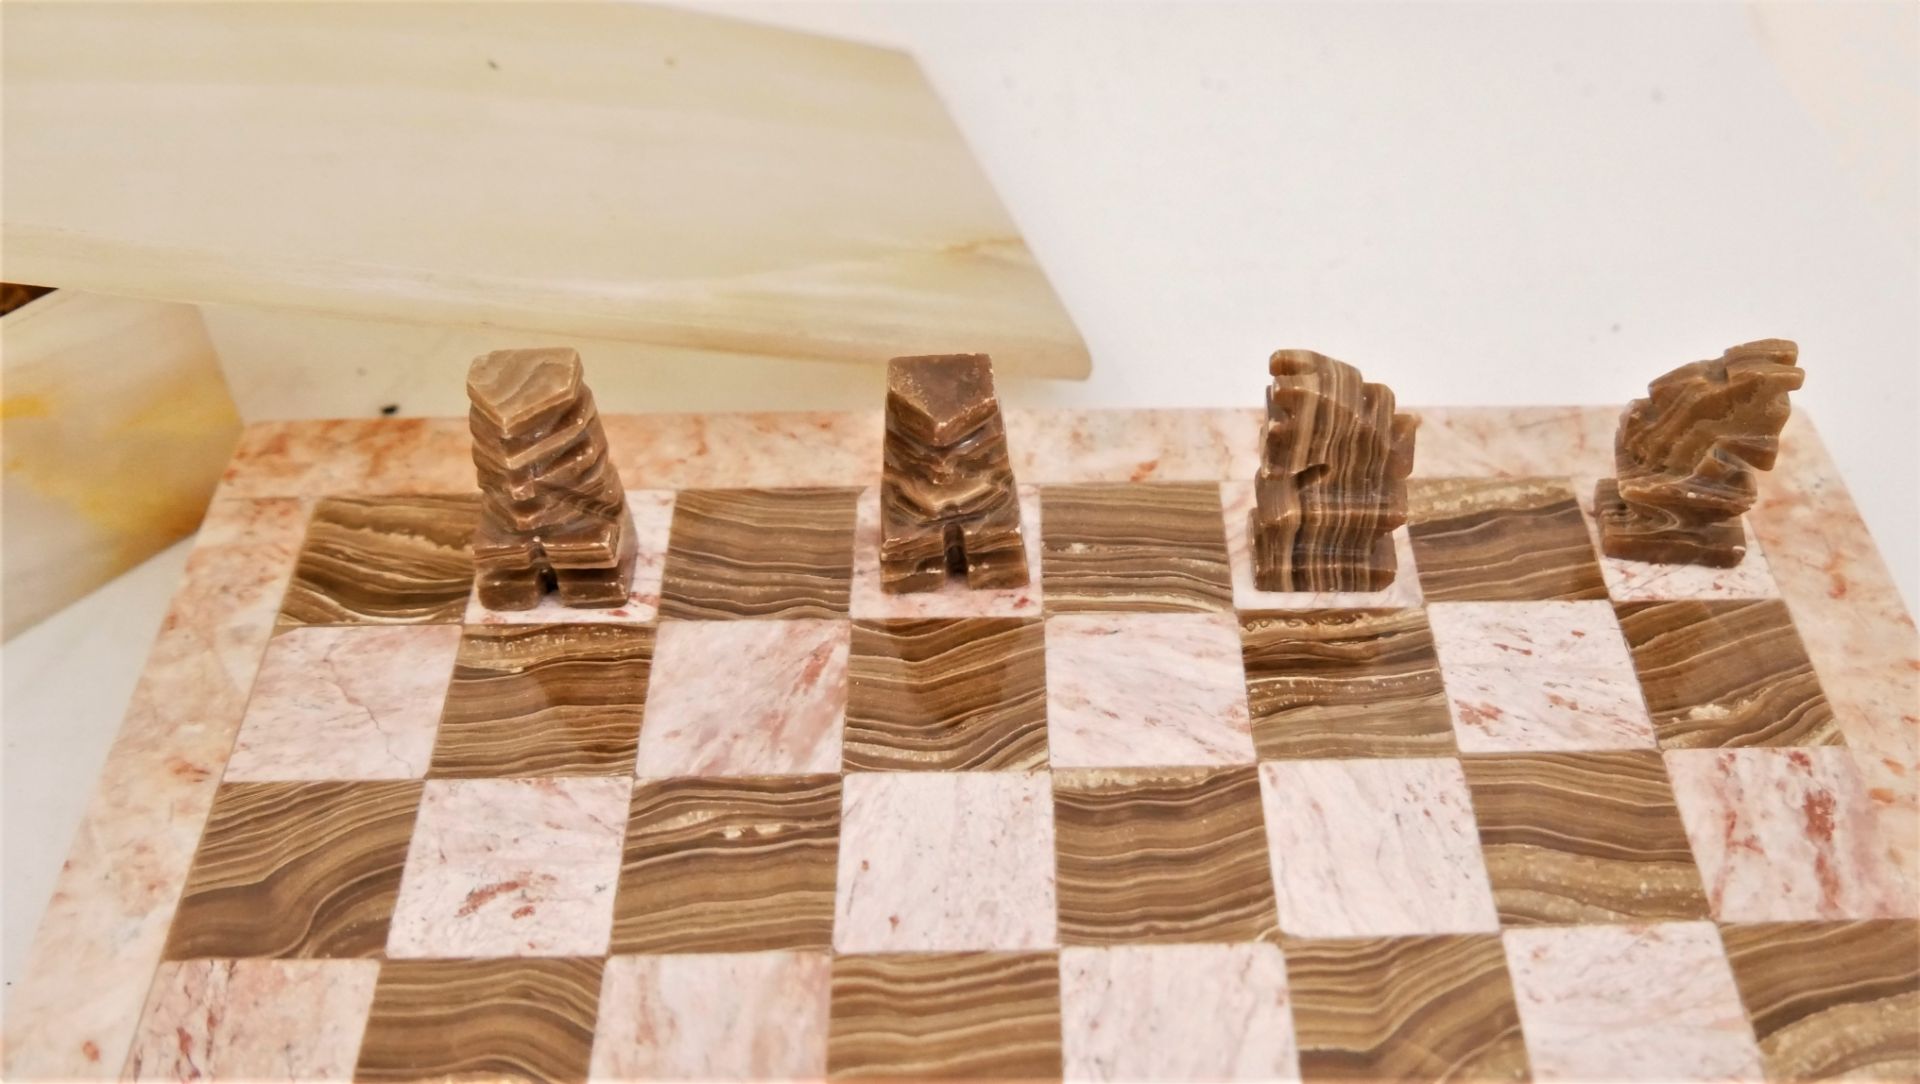 Marmorschachspiel, vollständig mit allen Spielfiguren, Maße ca. 20x20 cm. Aufbewahrungsbox ebenfalls - Image 3 of 3